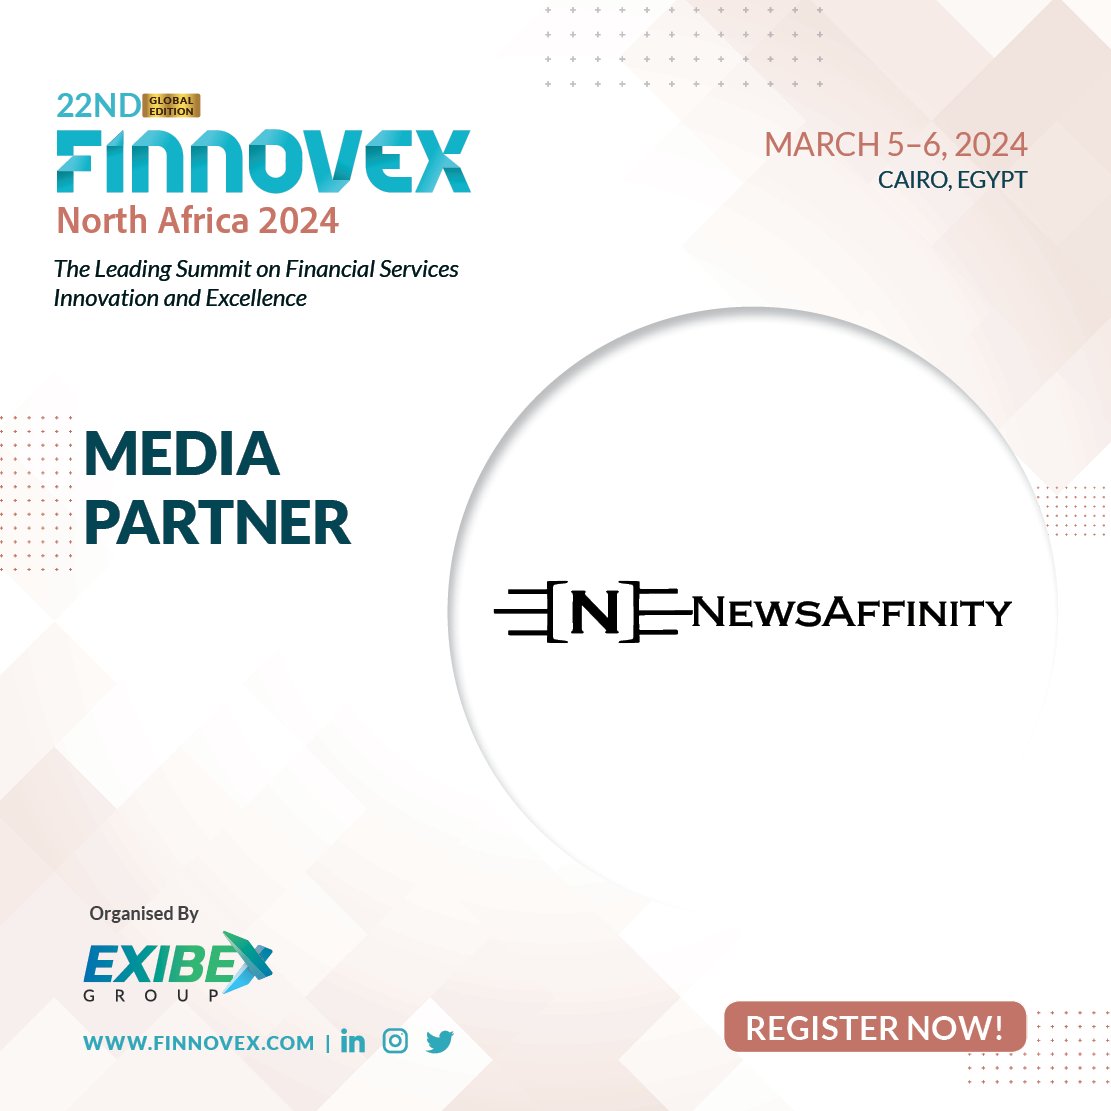 𝗪𝗲'𝗿𝗲 𝘁𝗵𝗿𝗶𝗹𝗹𝗲𝗱 𝘁𝗼 𝗿𝗲𝘃𝗲𝗮𝗹 @newaffinity 𝗮𝘀 𝗼𝘂𝗿 𝗲𝘀𝘁𝗲𝗲𝗺𝗲𝗱 𝗺𝗲𝗱𝗶𝗮 𝗽𝗮𝗿𝘁𝗻𝗲𝗿 𝗳𝗼𝗿 𝗙𝗶𝗻𝗻𝗼𝘃𝗲𝘅 𝗡𝗼𝗿𝘁𝗵 𝗔𝗳𝗿𝗶𝗰𝗮 𝟮𝟬𝟮𝟰 #newsaffinity #finnovexna2024 #bankinginnovation